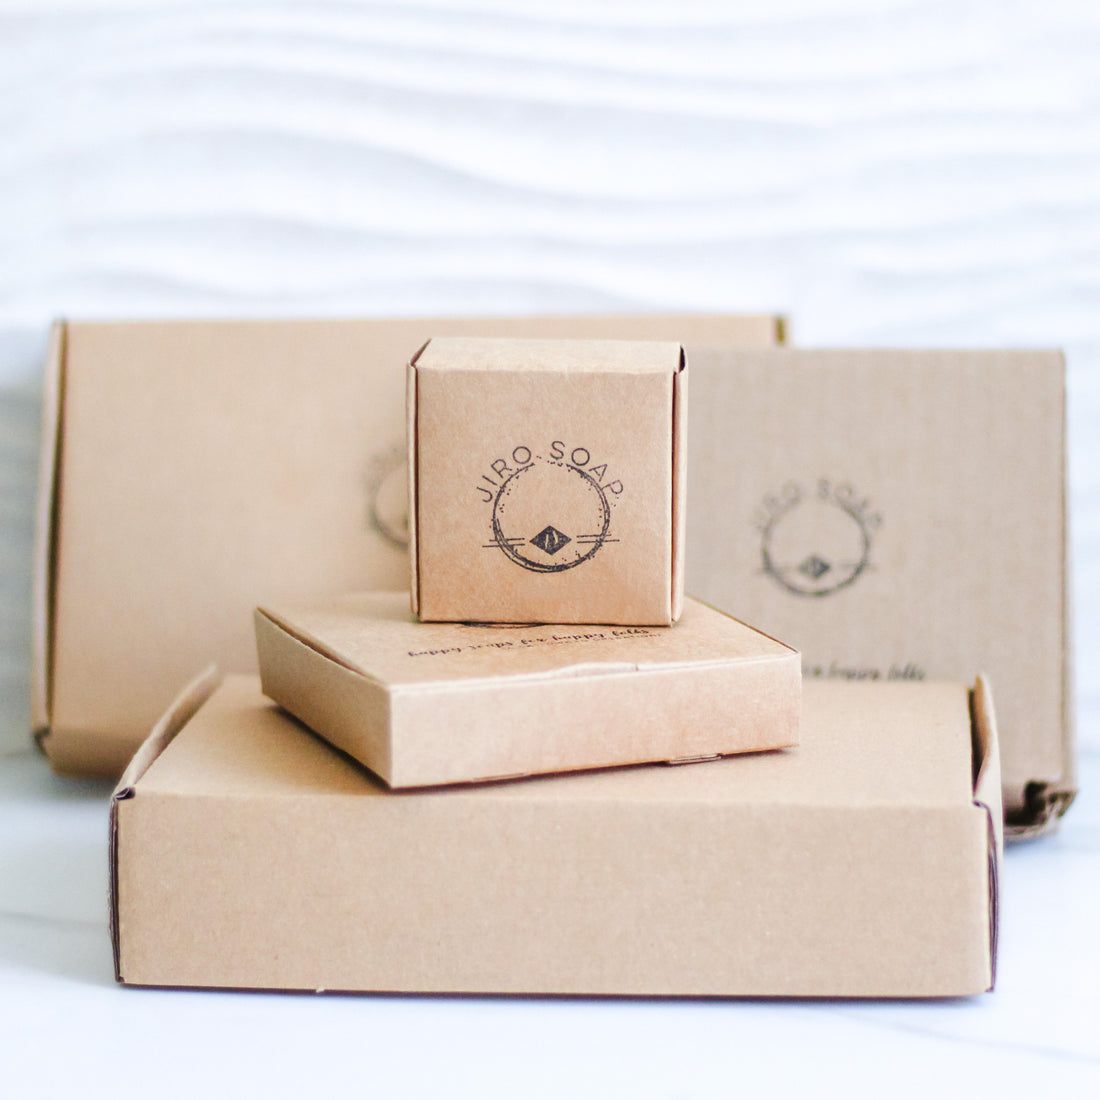 sustainable cardboard packaging